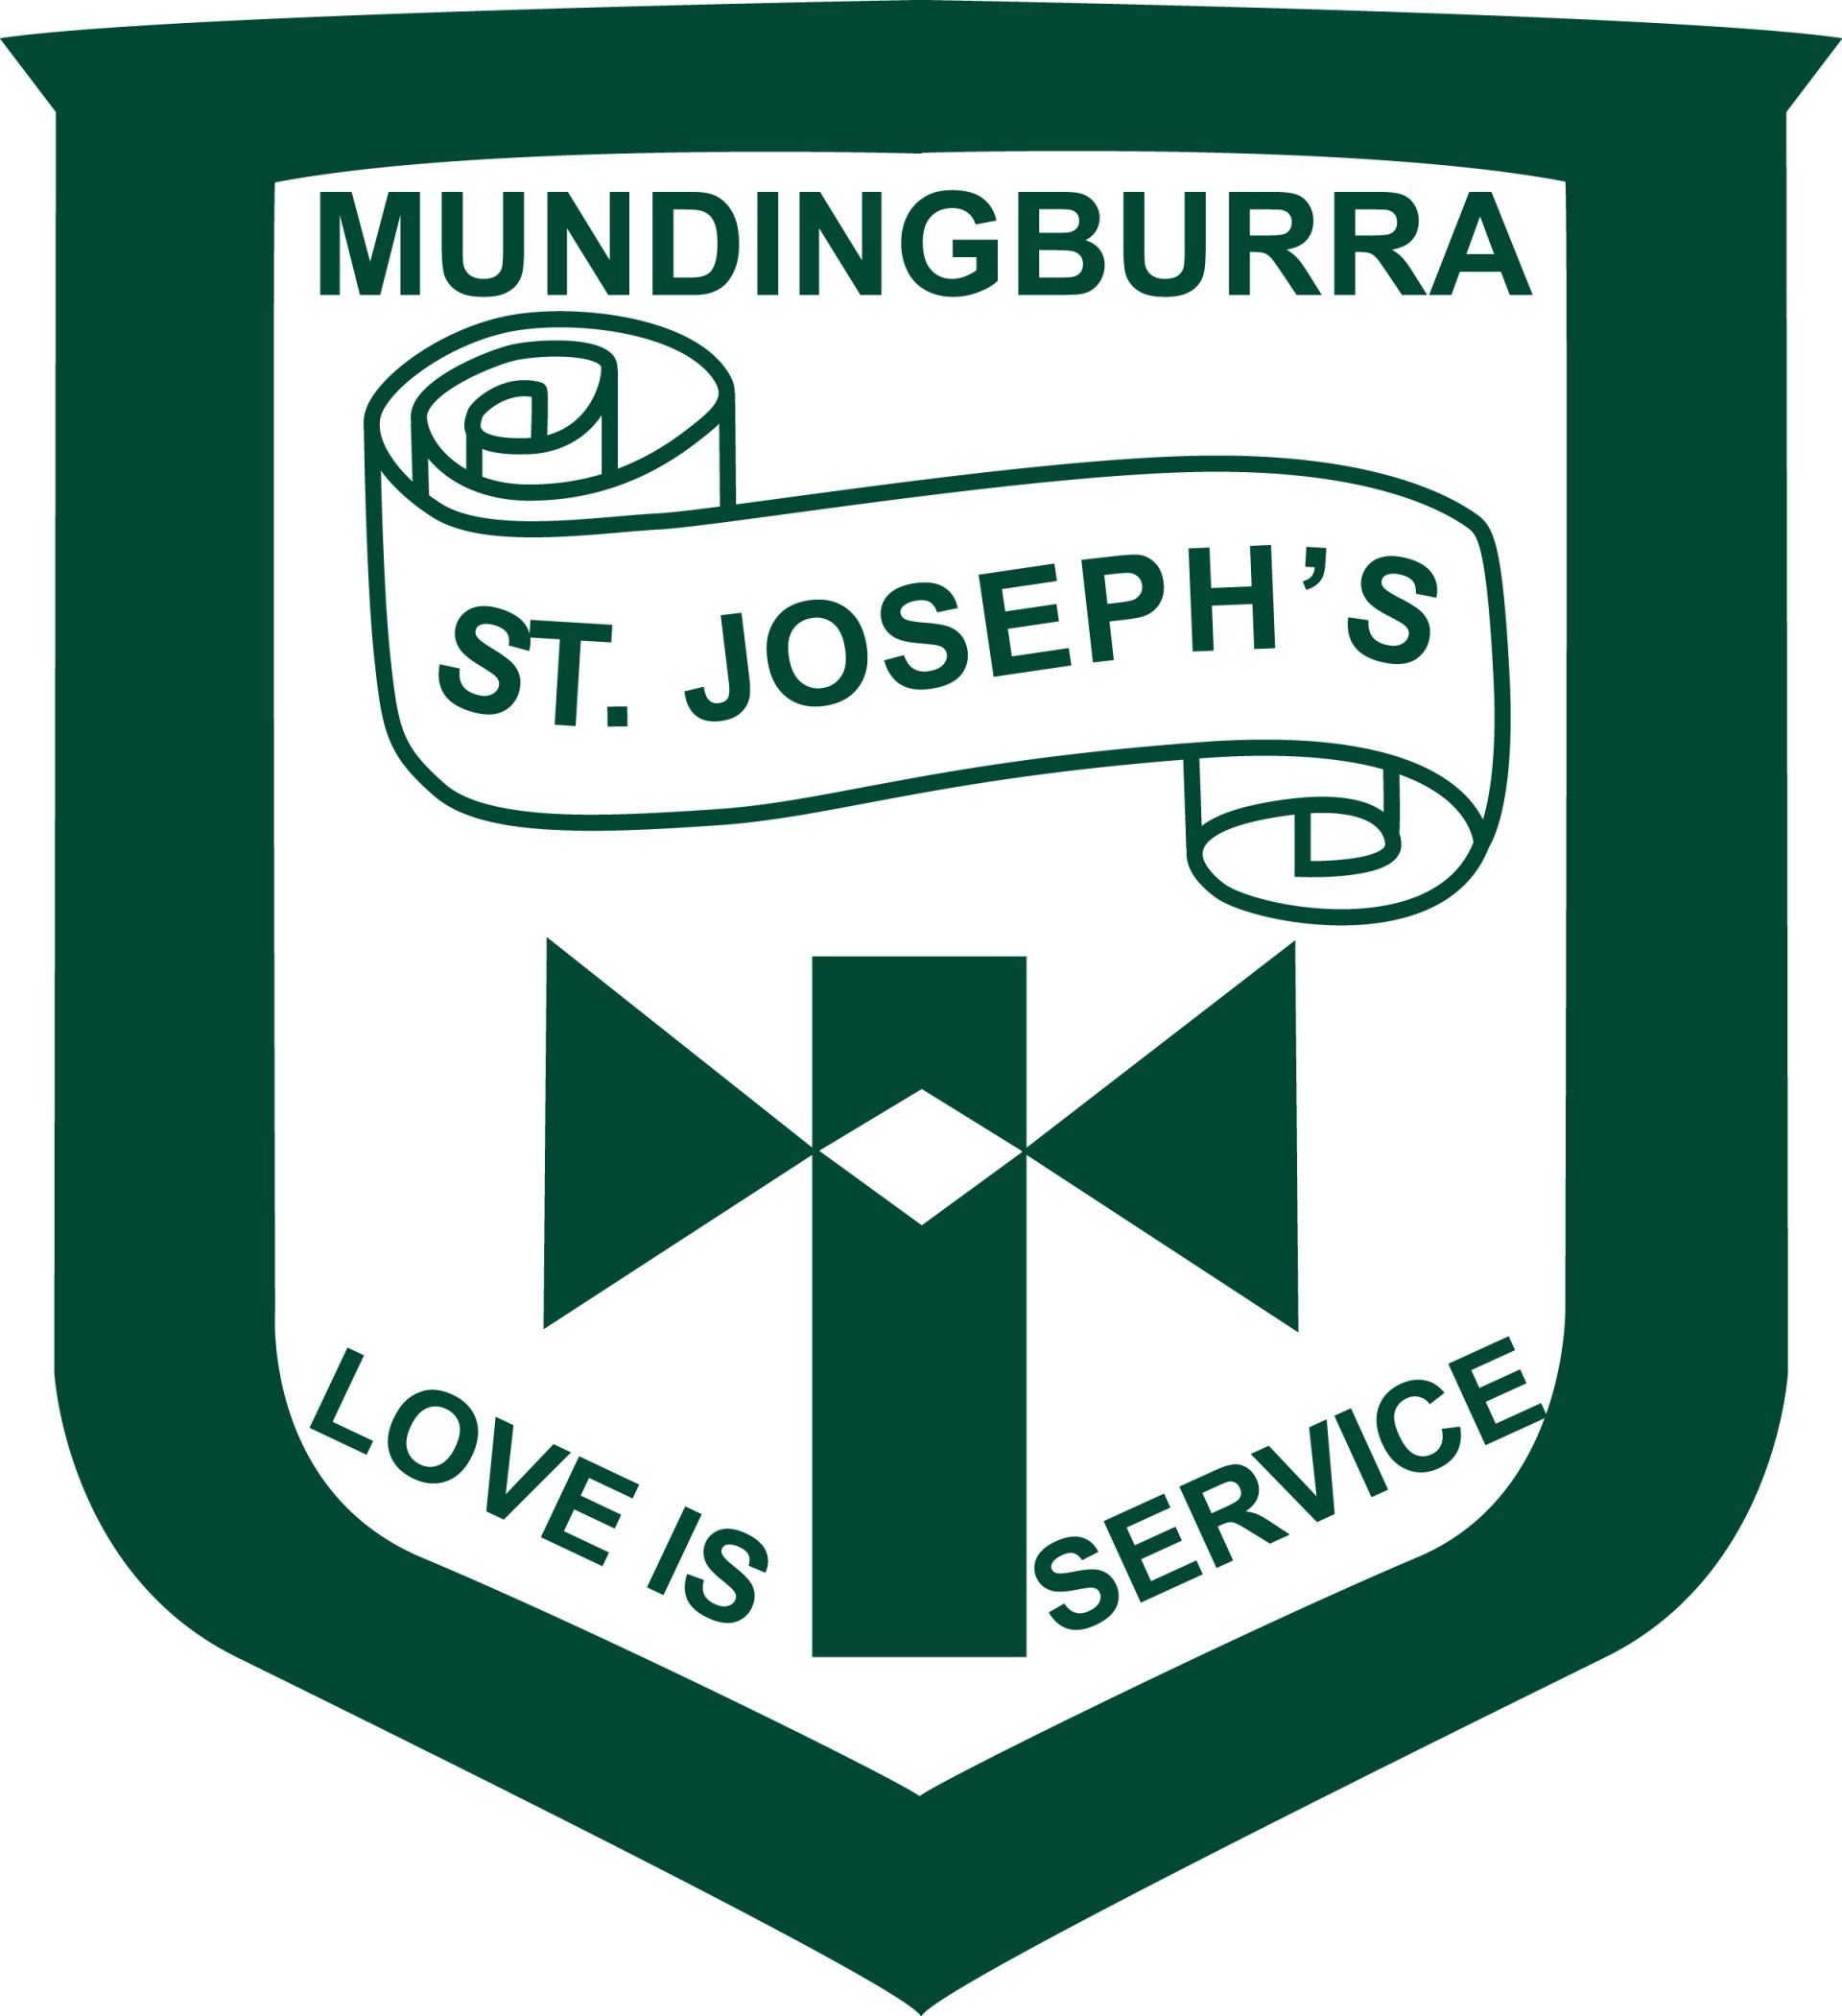 St Joseph's Catholic School, Mundingburra